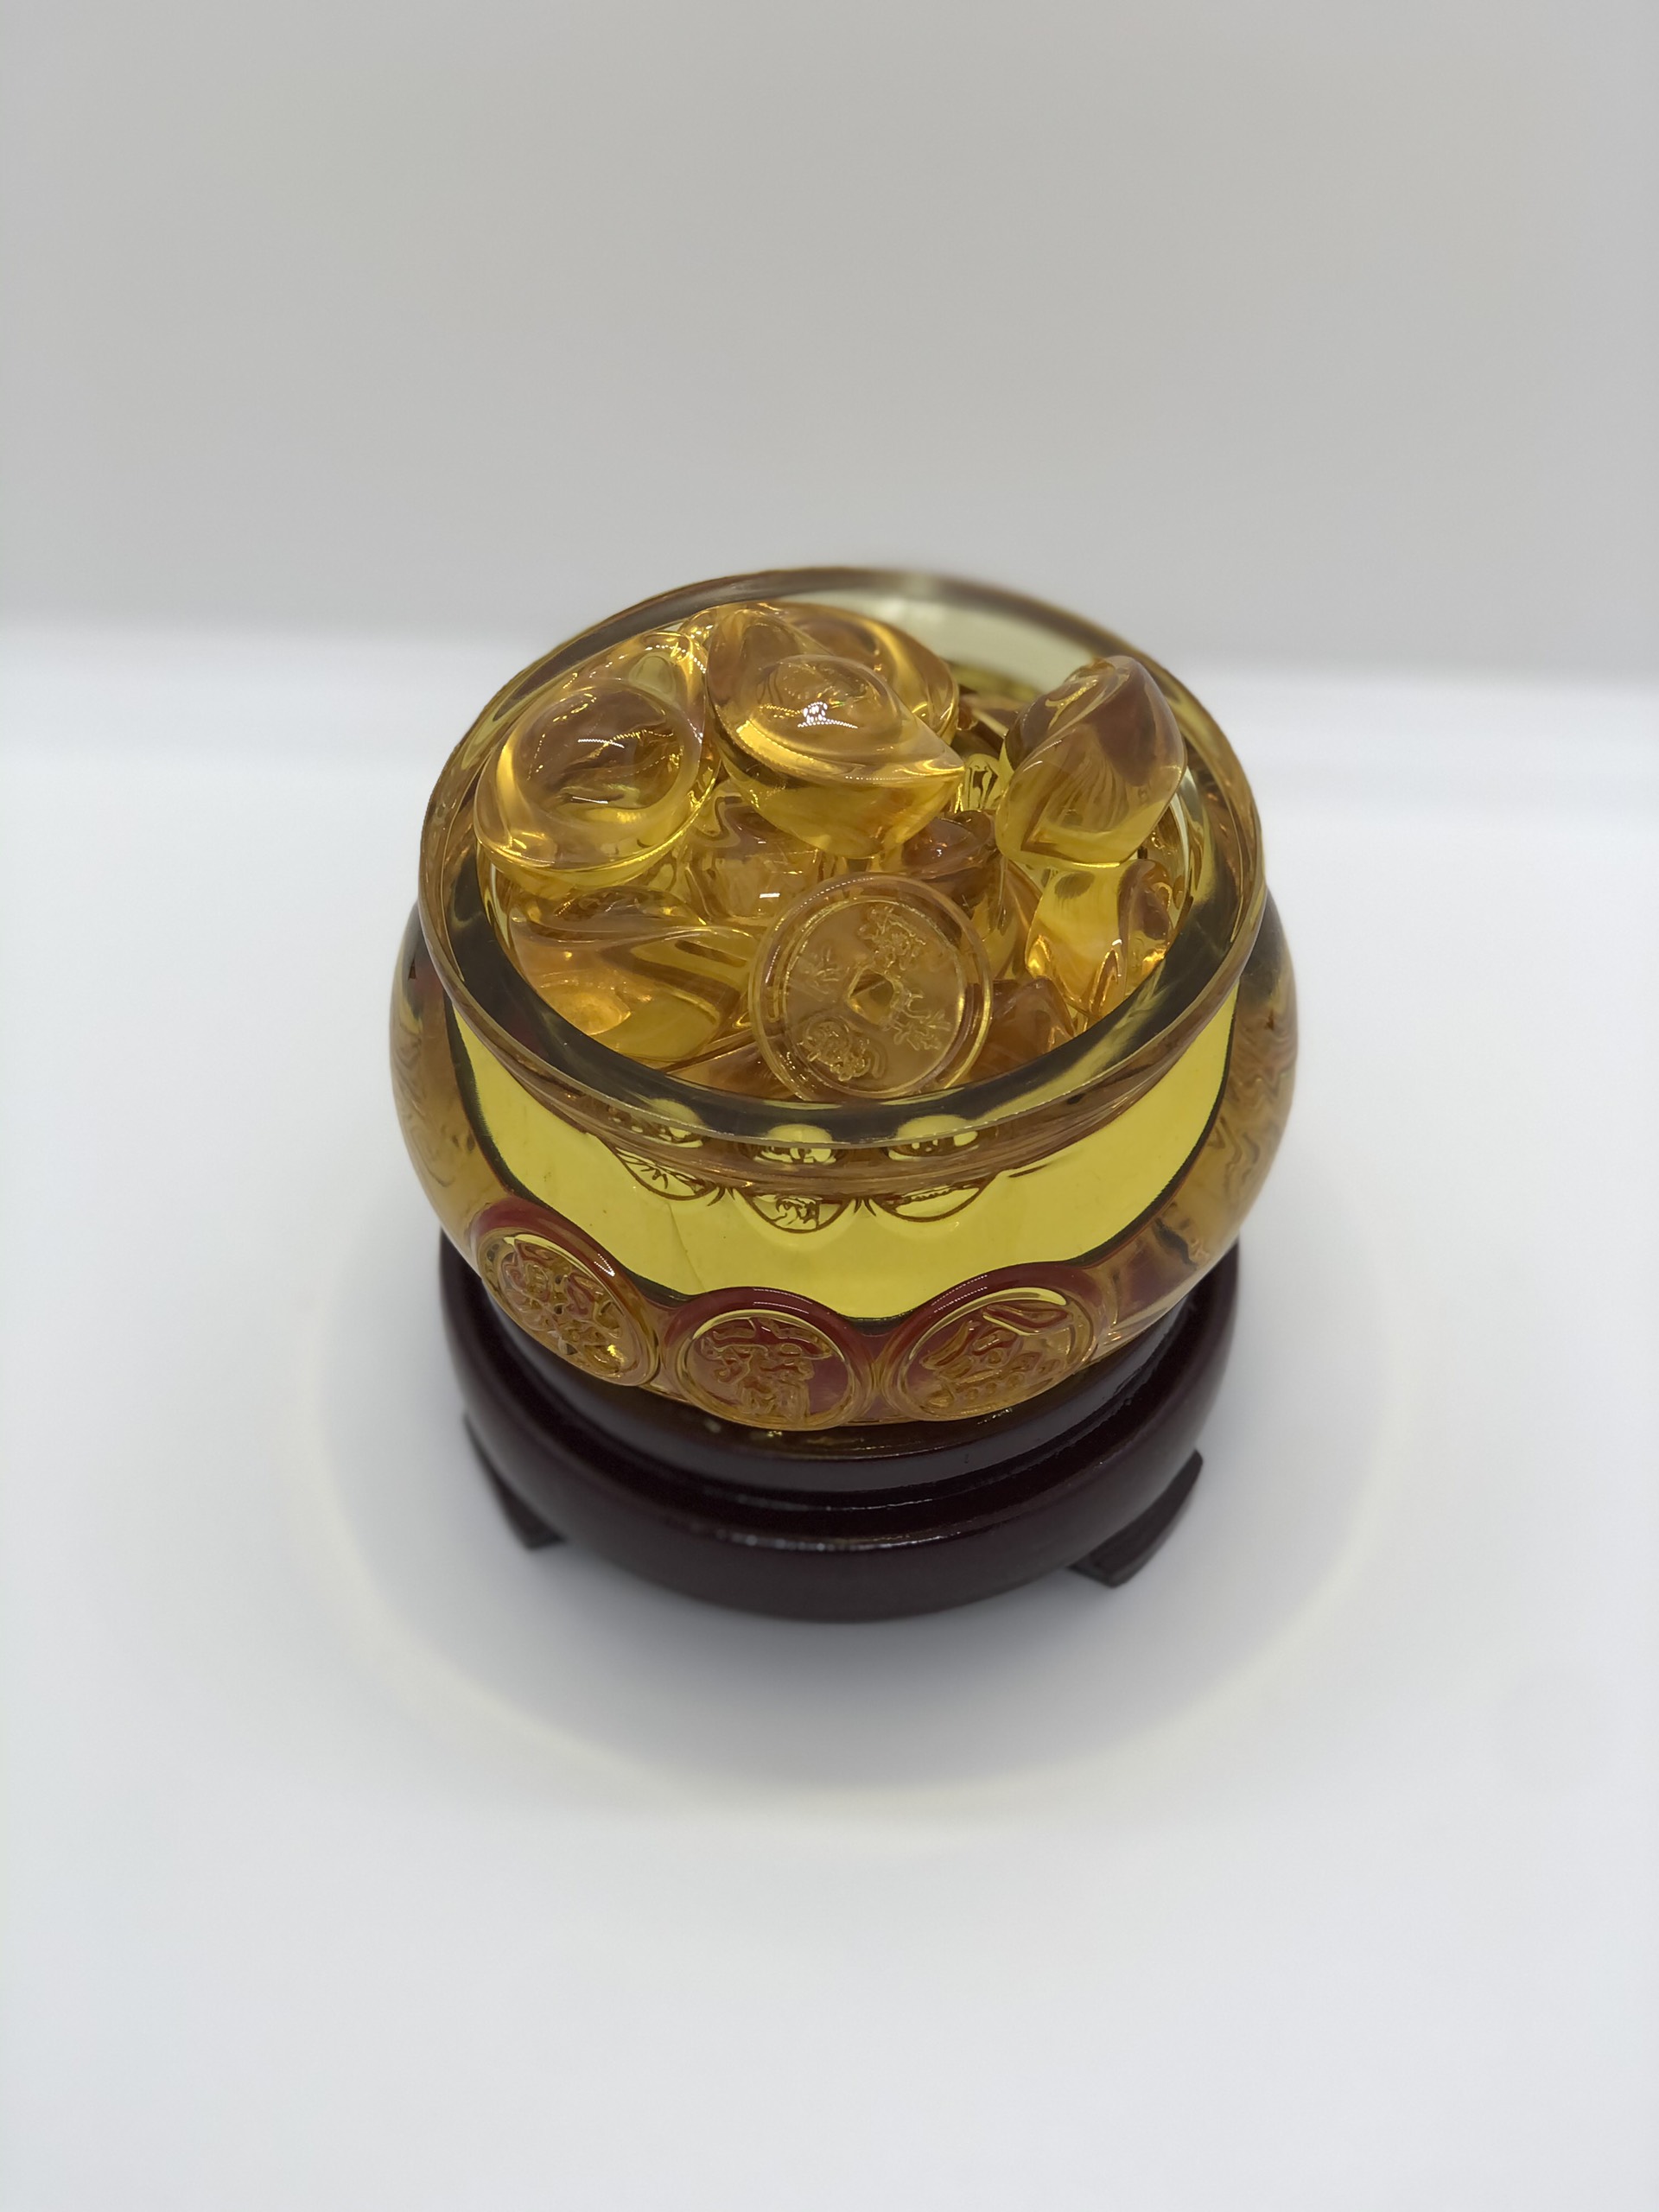 Bát Tụ Bảo Đá Lưu ly 10cm - Kèm Thỏi Vàng và Đôn Kê Gỗ